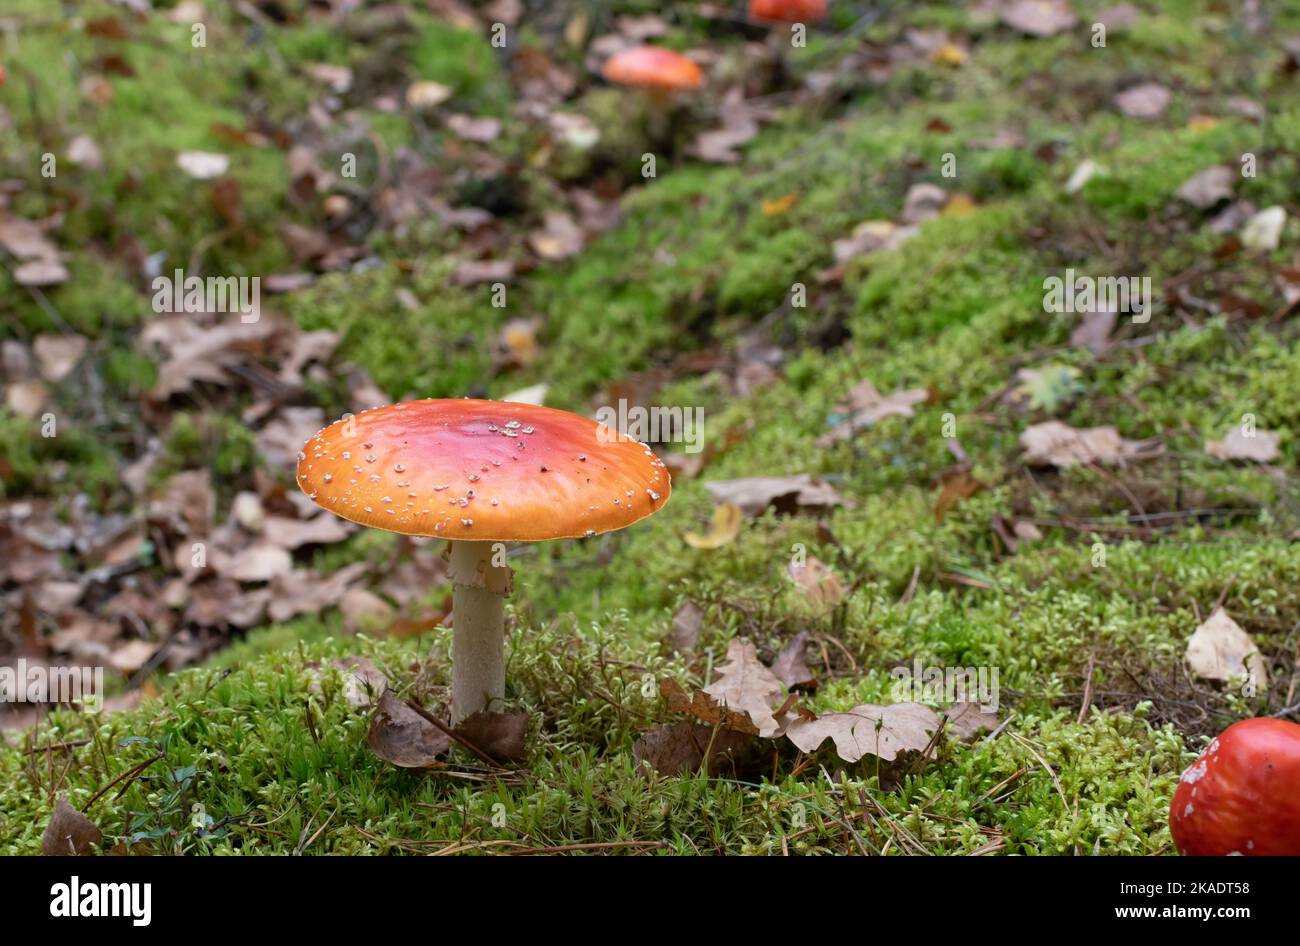 Mouche orange vif champignon agarique sur fond flou de mousse verte et de feuilles mortes Banque D'Images